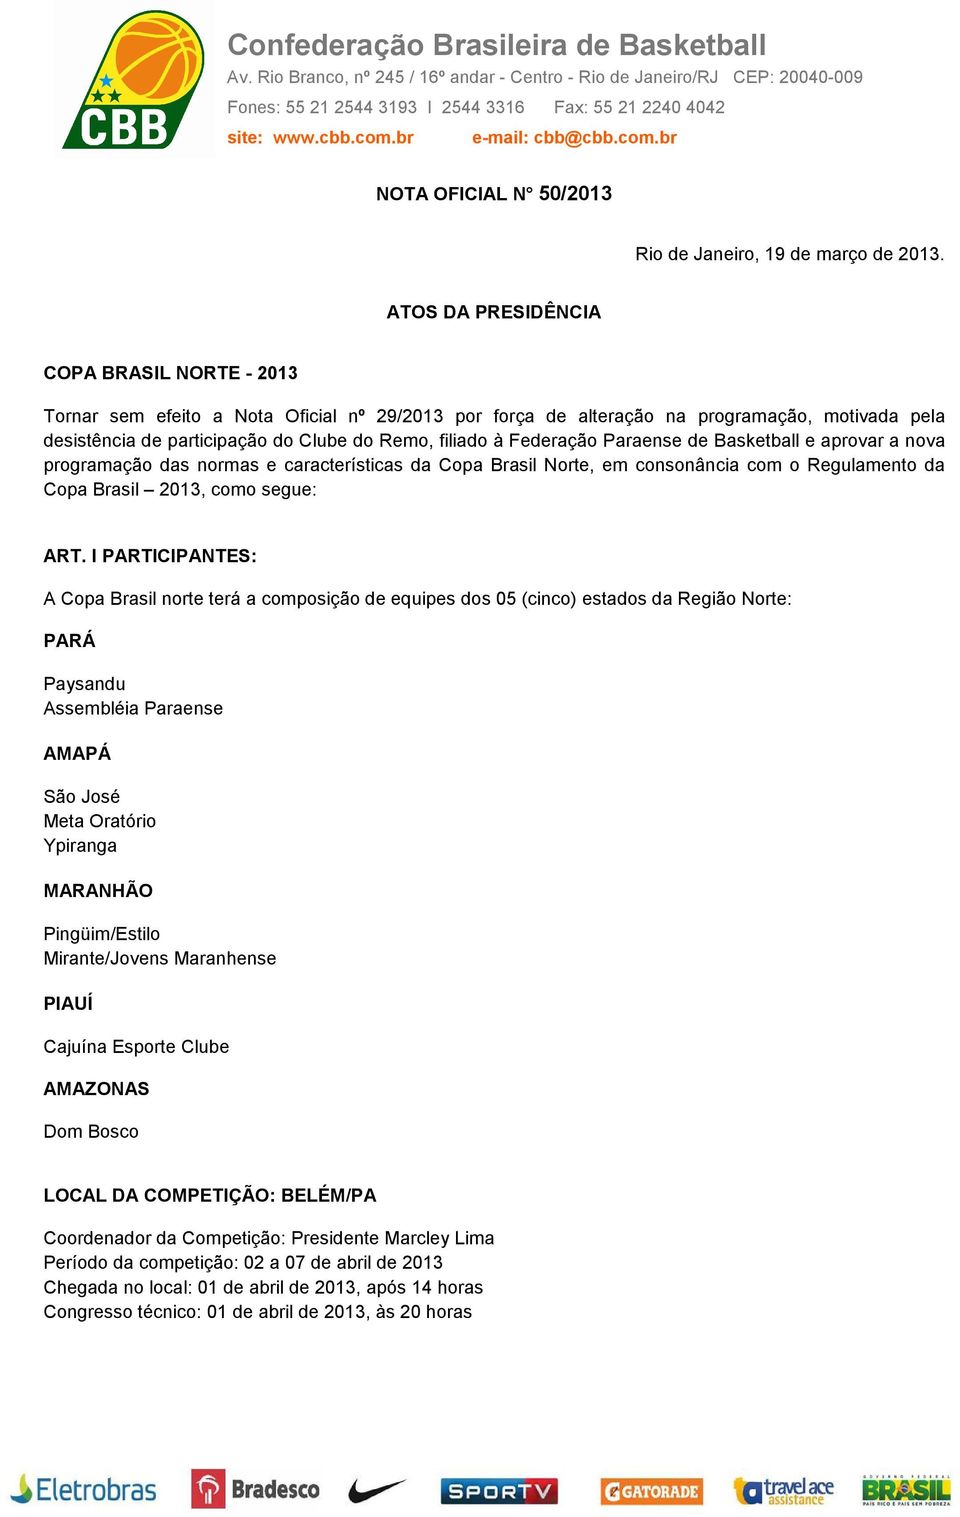 Federação Paraense de Basketball e aprovar a nova programação das normas e características da Copa Brasil Norte, em consonância com o Regulamento da Copa Brasil 2013, como segue: ART.